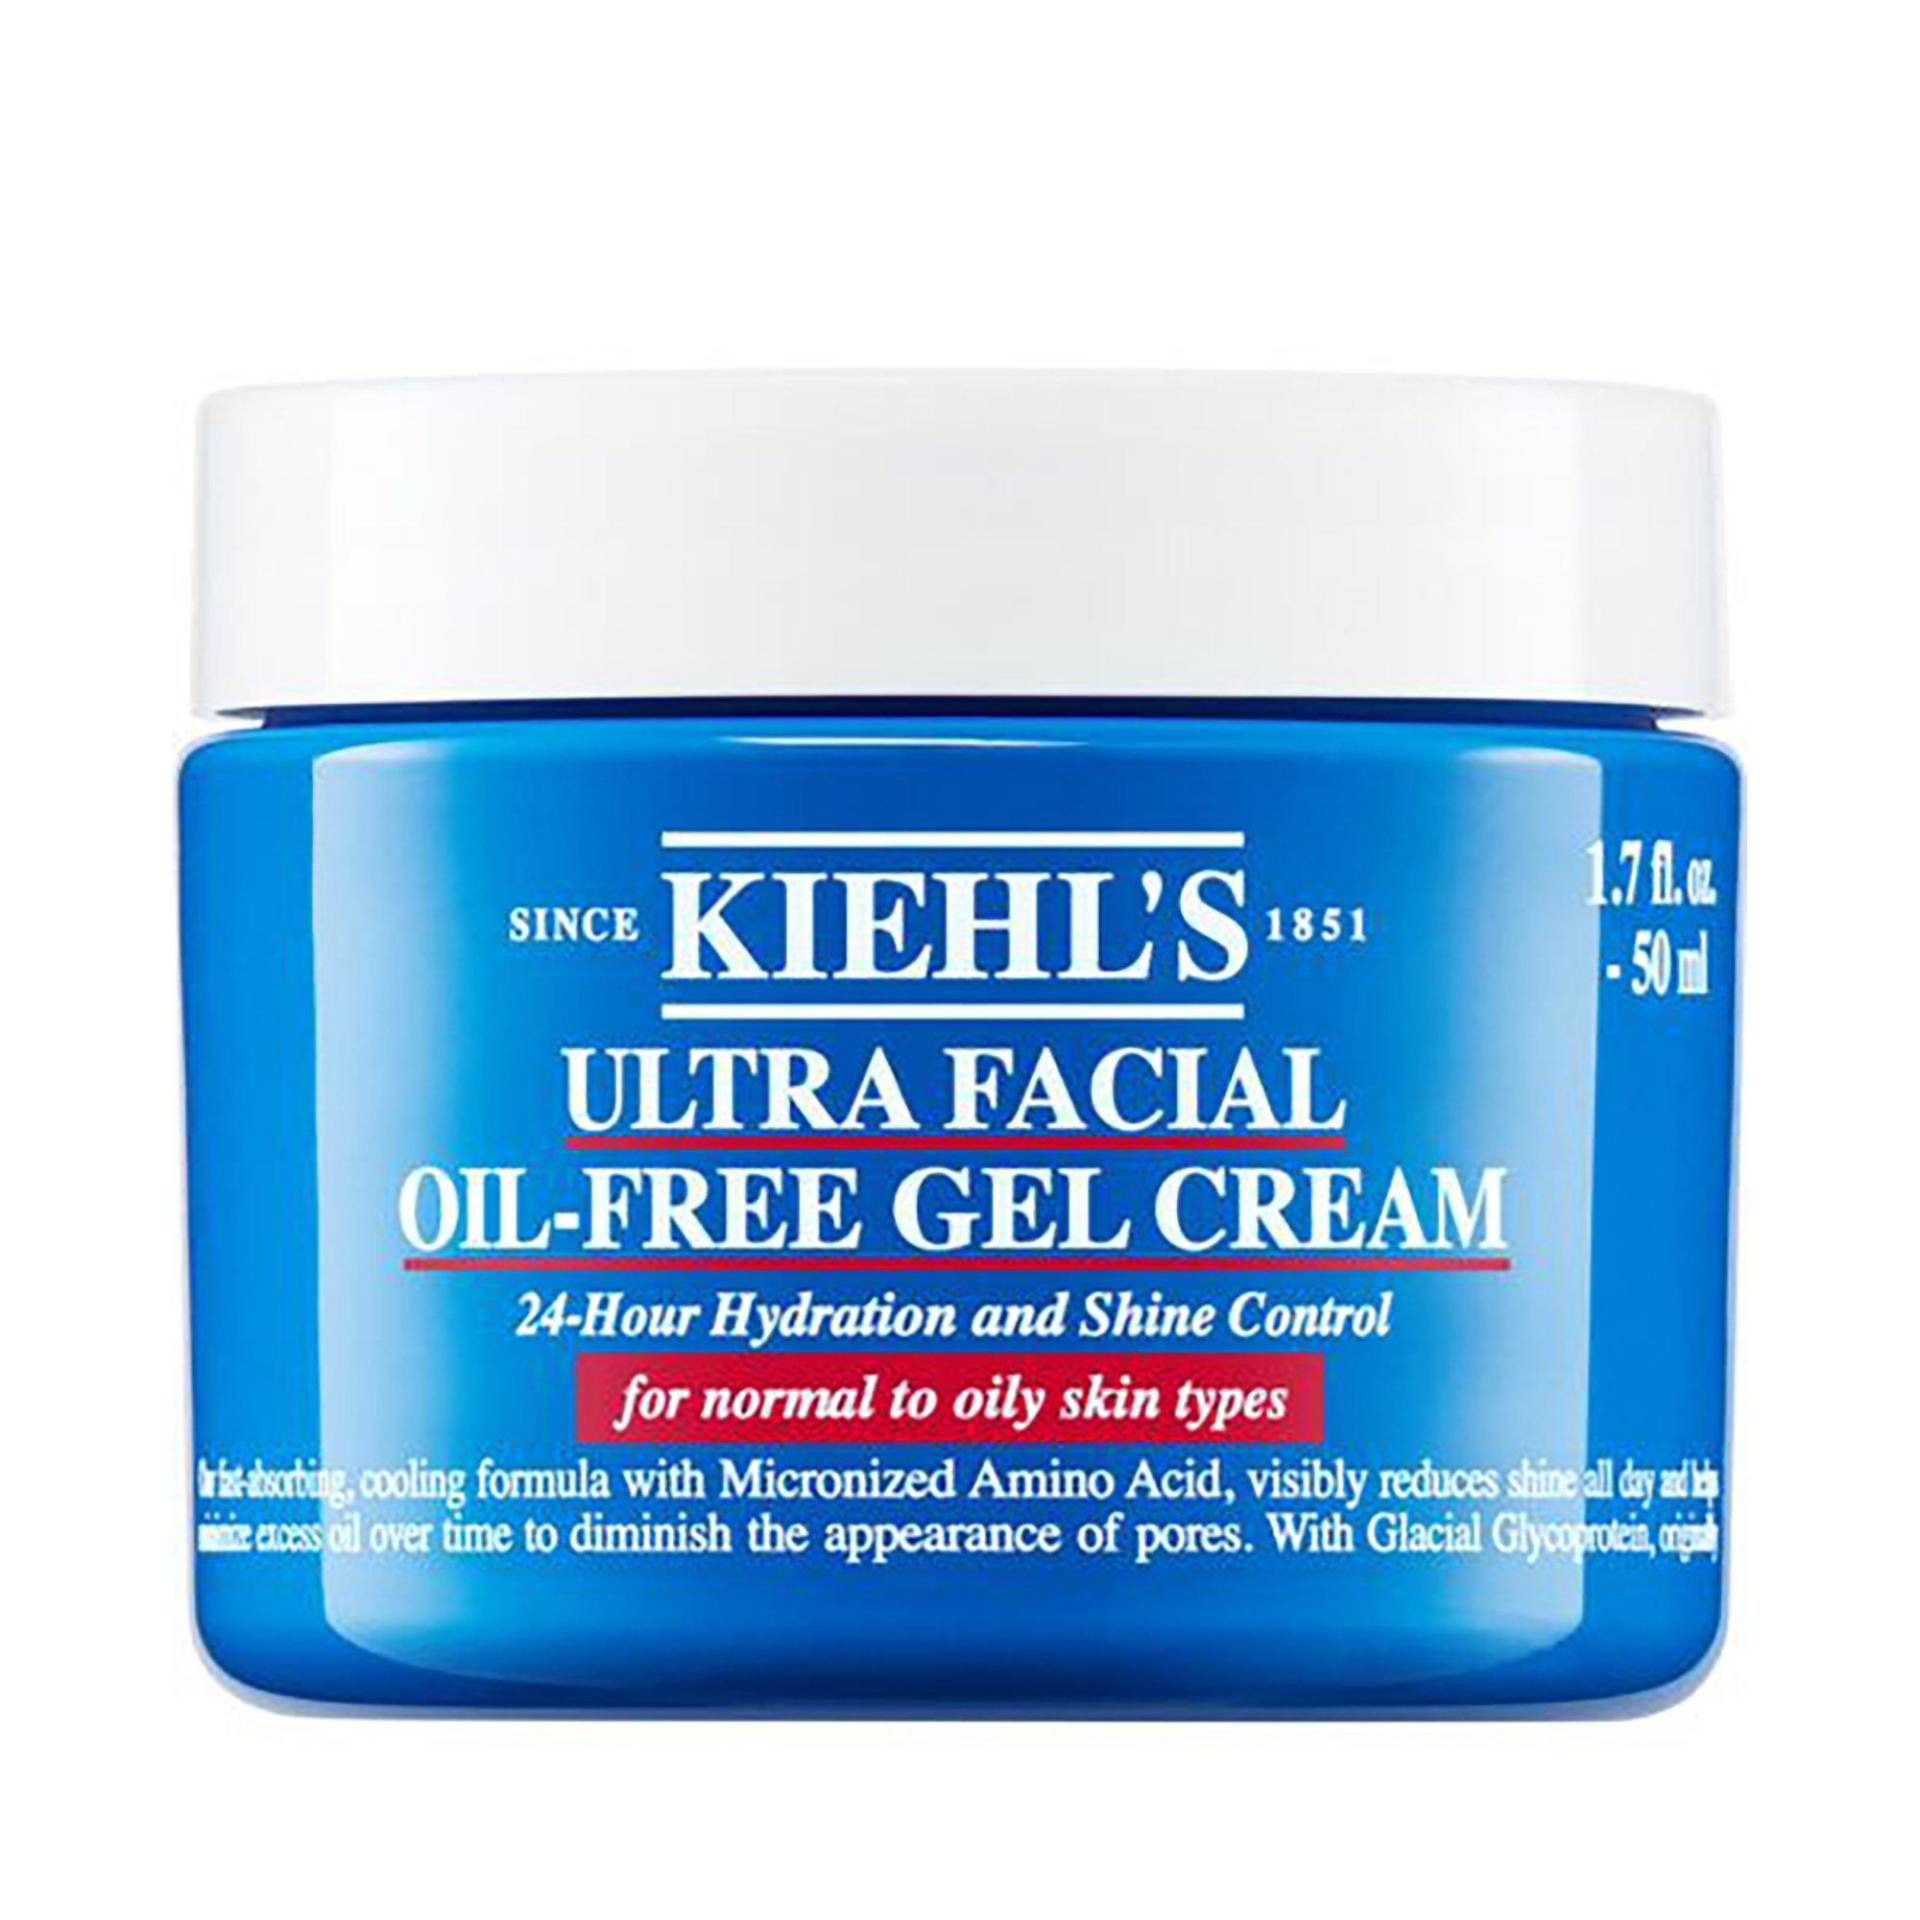 Ultra Facial Oil-free Gel Cream Damen  125ml von Kiehl's